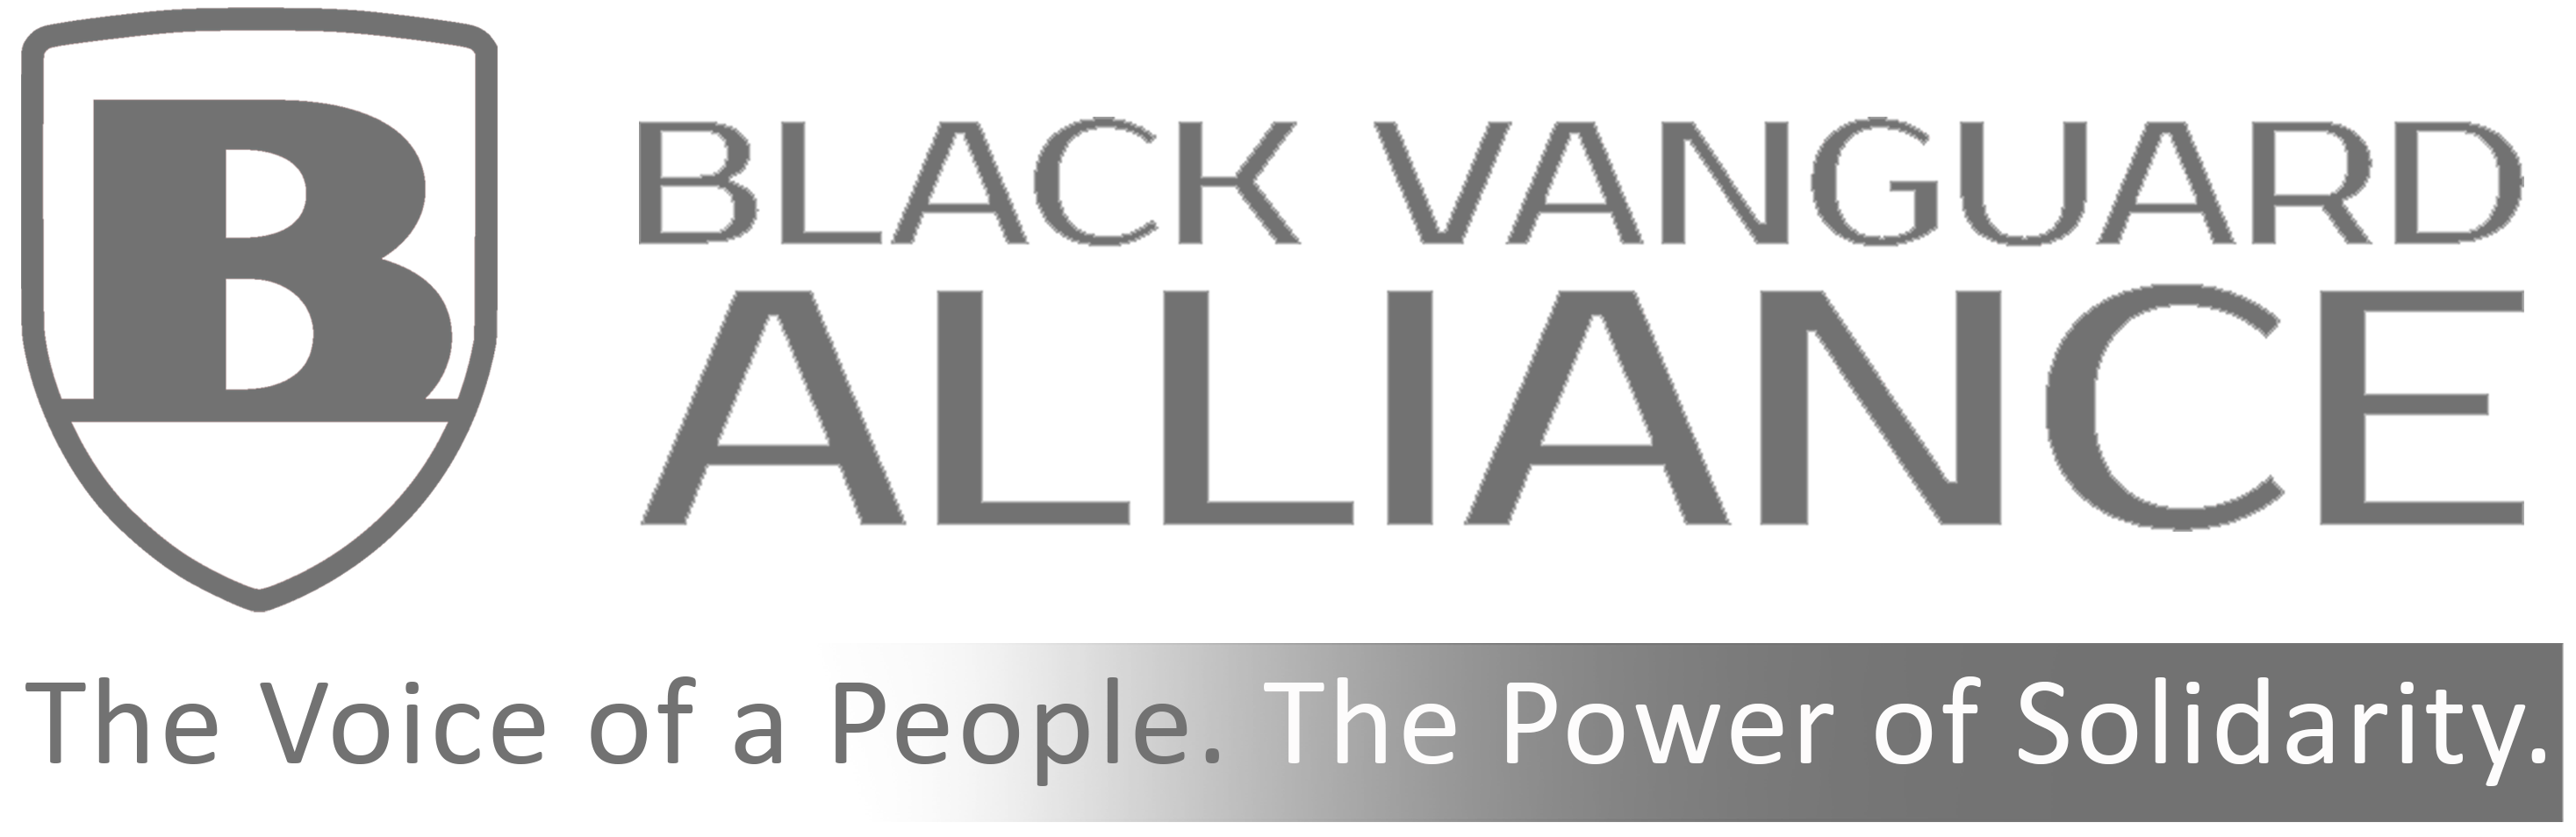 join-the-alliance-black-vanguard-alliance